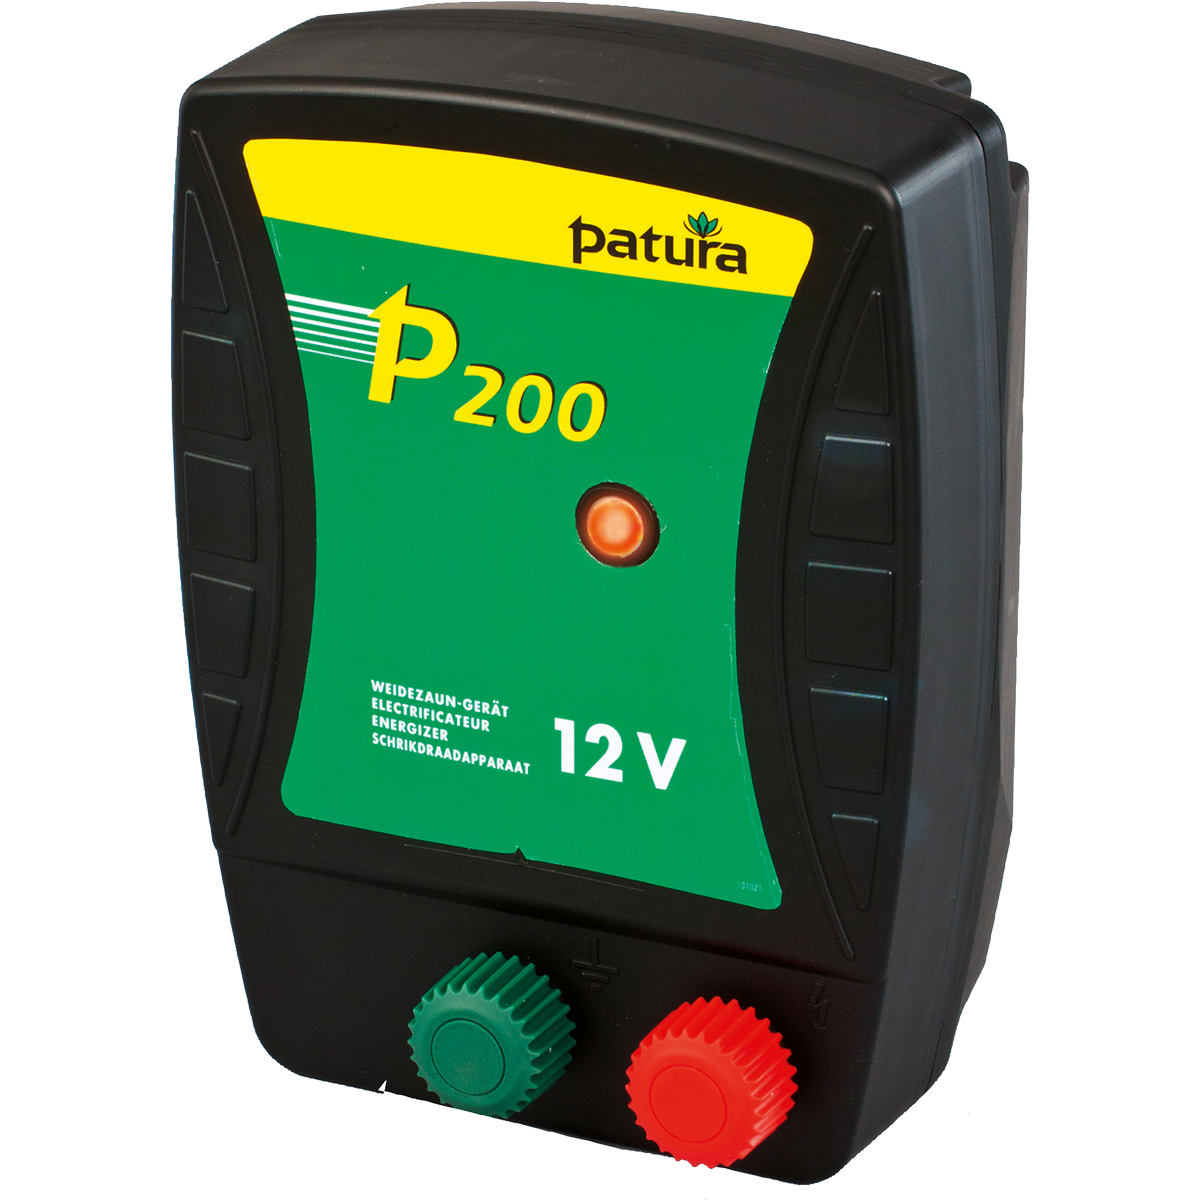 Patura p200 met afgesloten draagbox compact